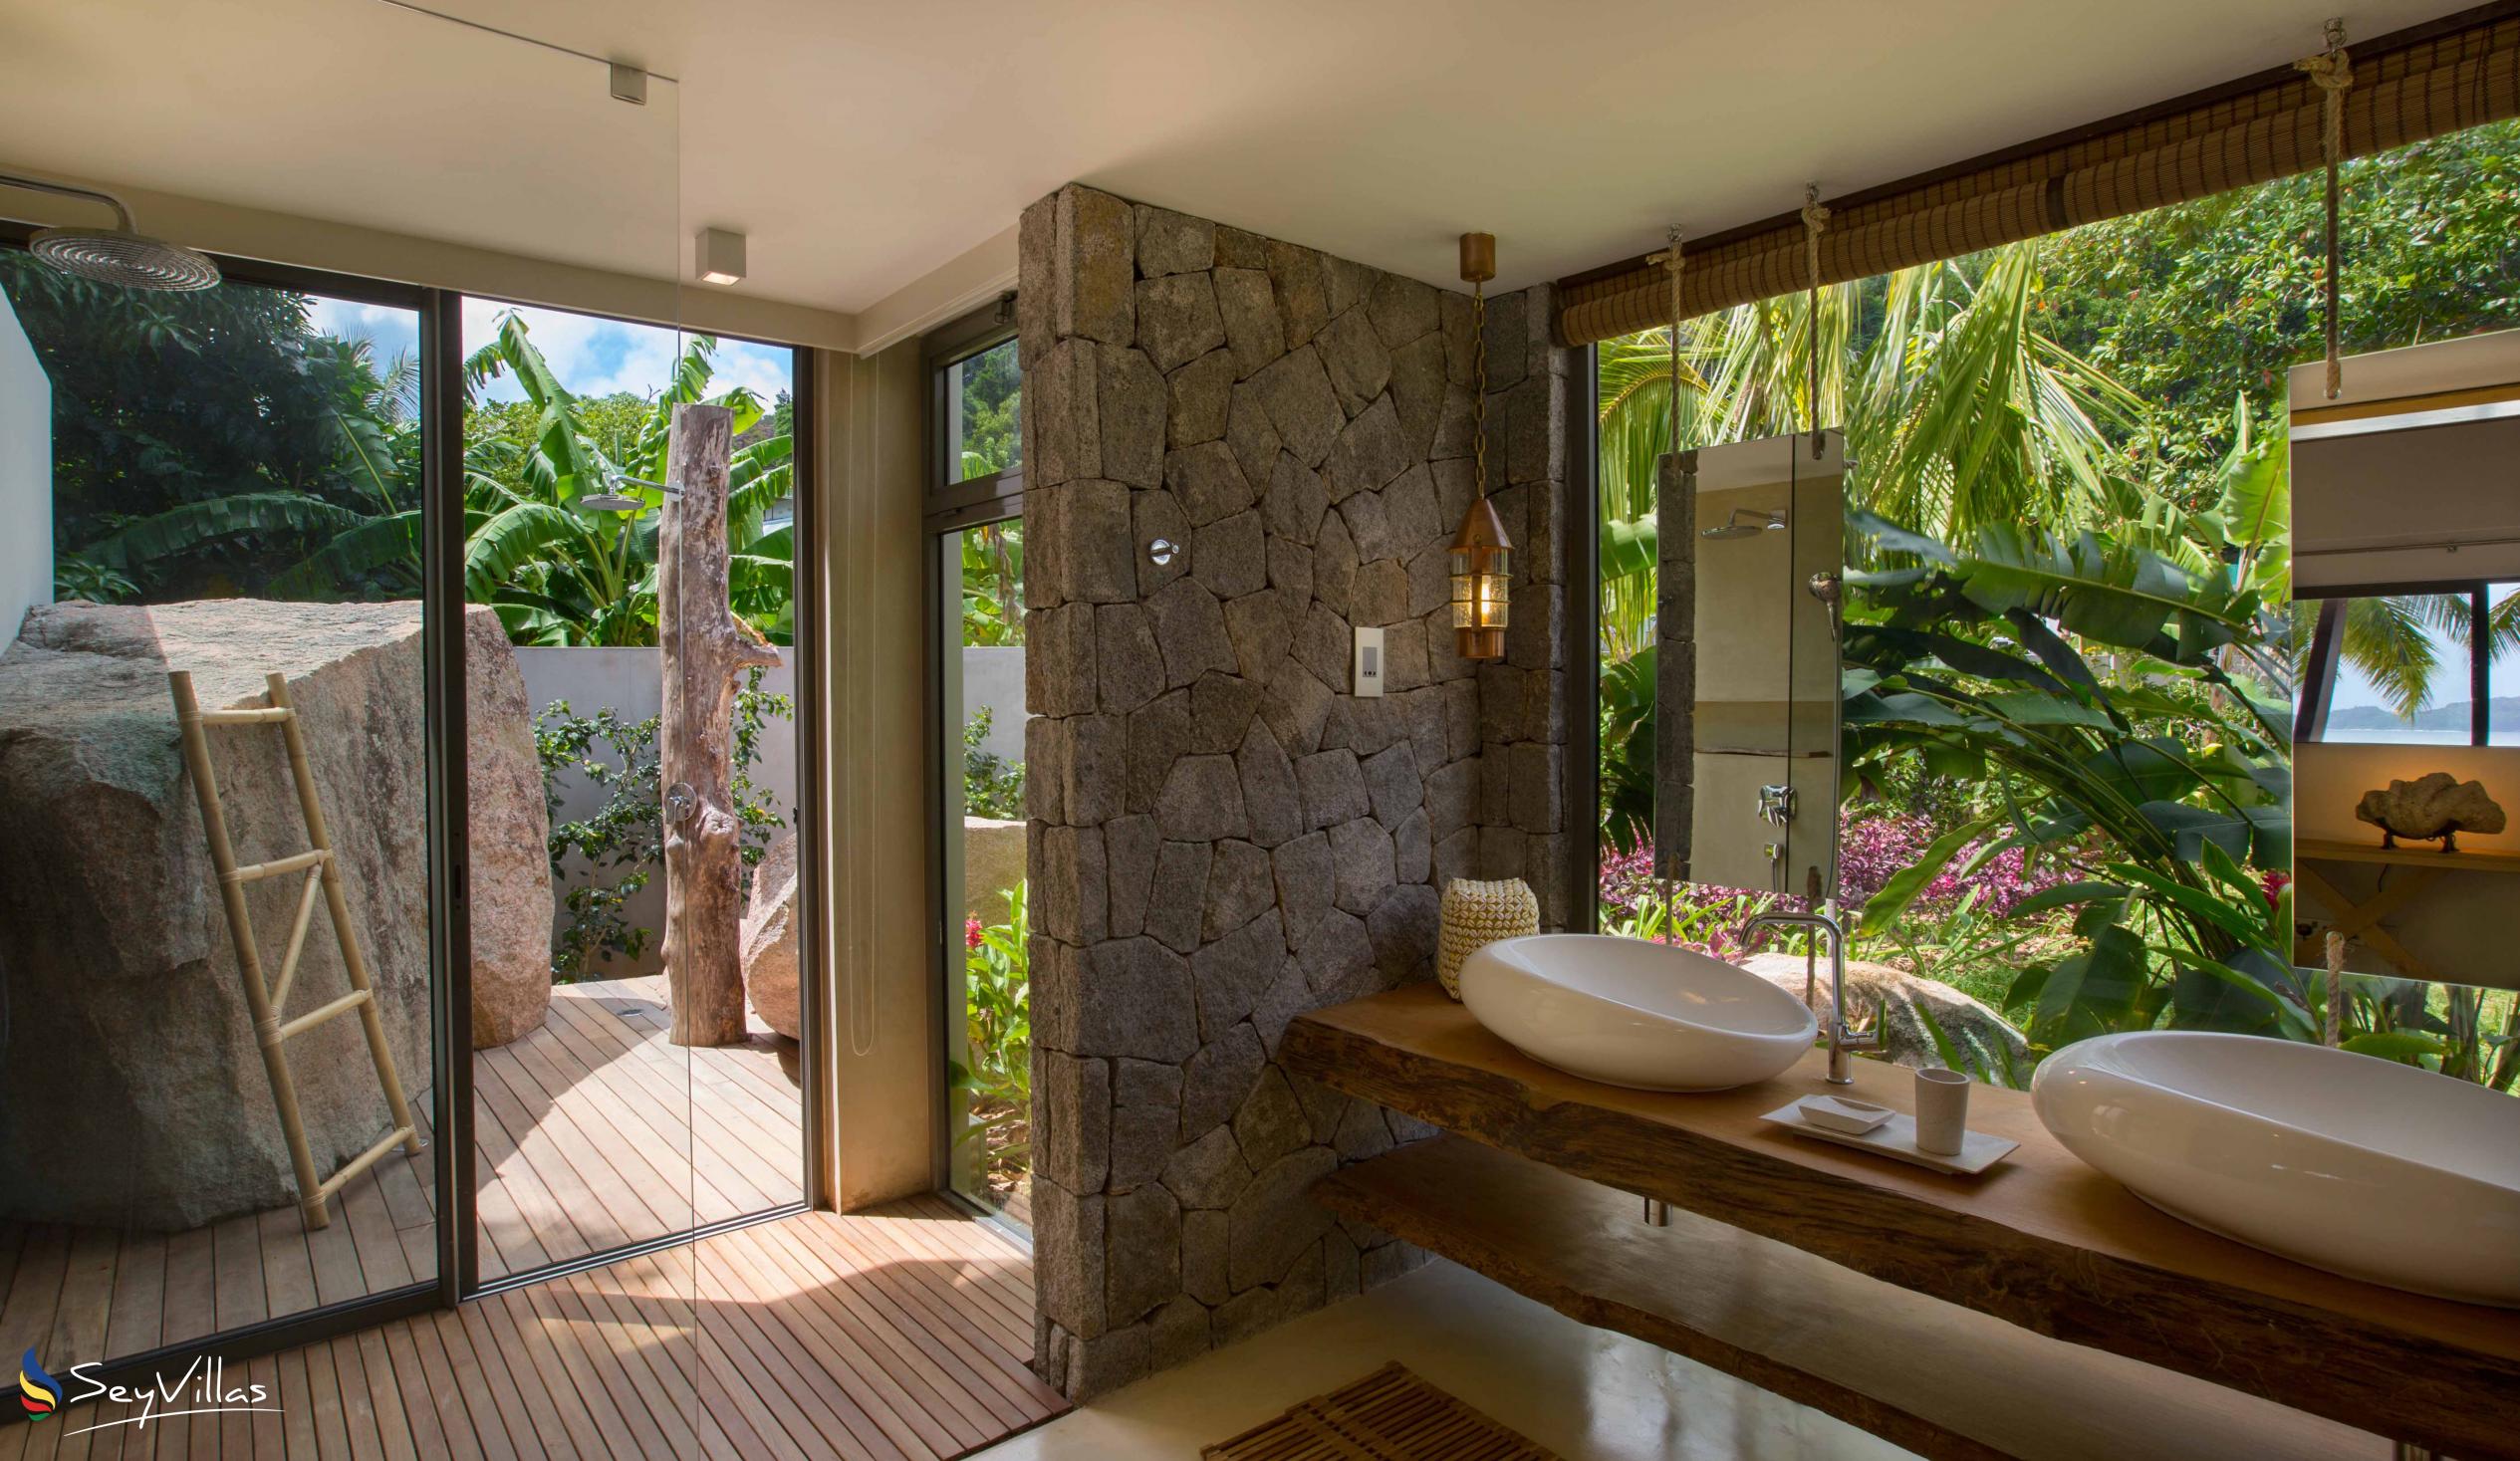 Photo 93: Villa Deckenia - 5-bedroom Villa - Praslin (Seychelles)